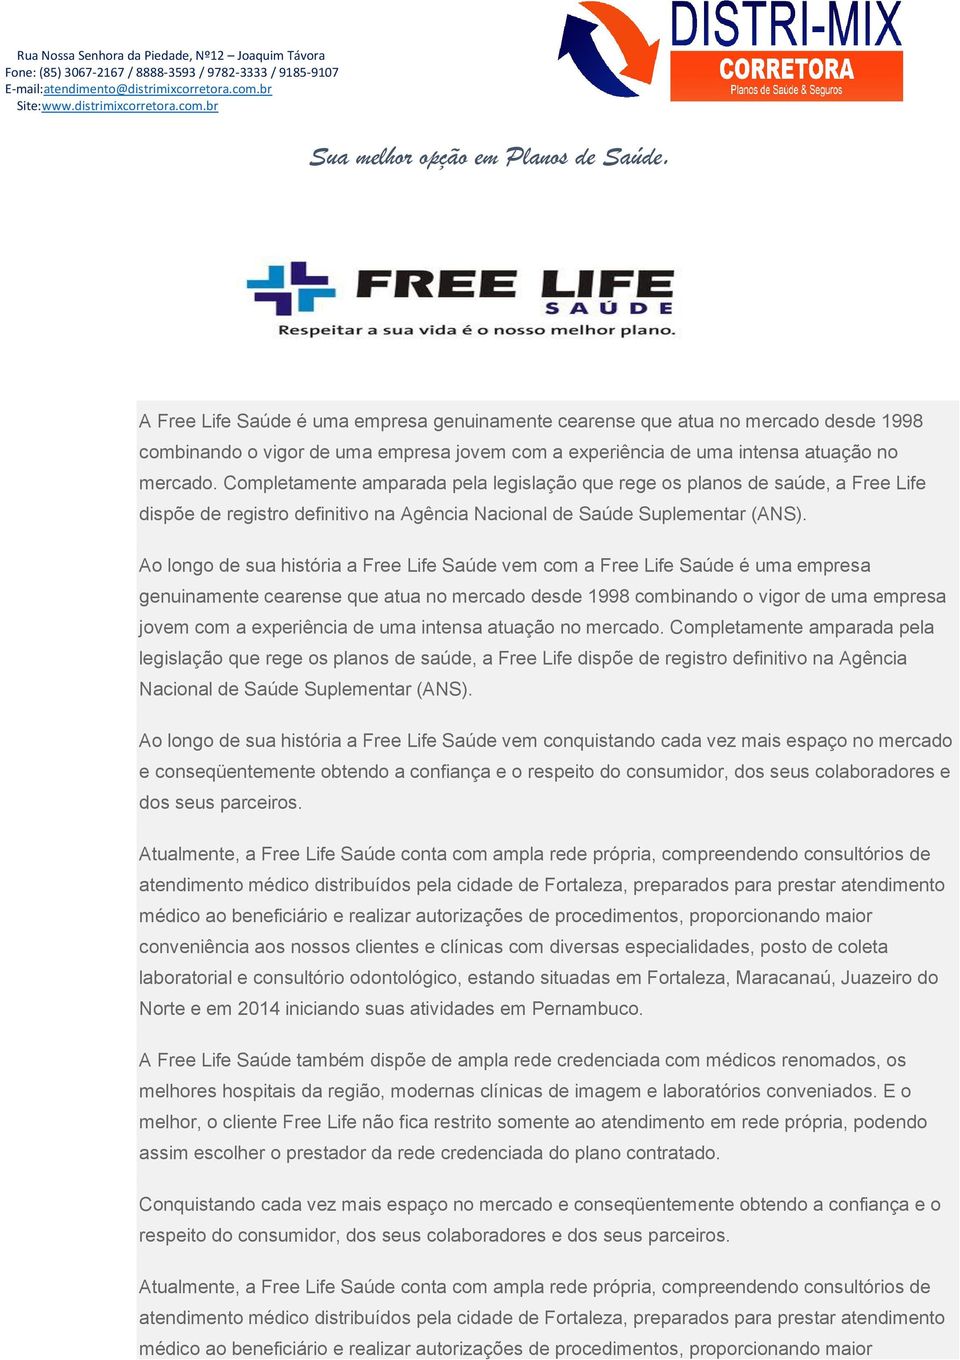 Ao longo de sua história a Free Life Saúde vem com a Free Life Saúde é uma empresa genuinamente cearense que atua no mercado desde 1998 combinando o vigor de uma empresa jovem com a experiência de